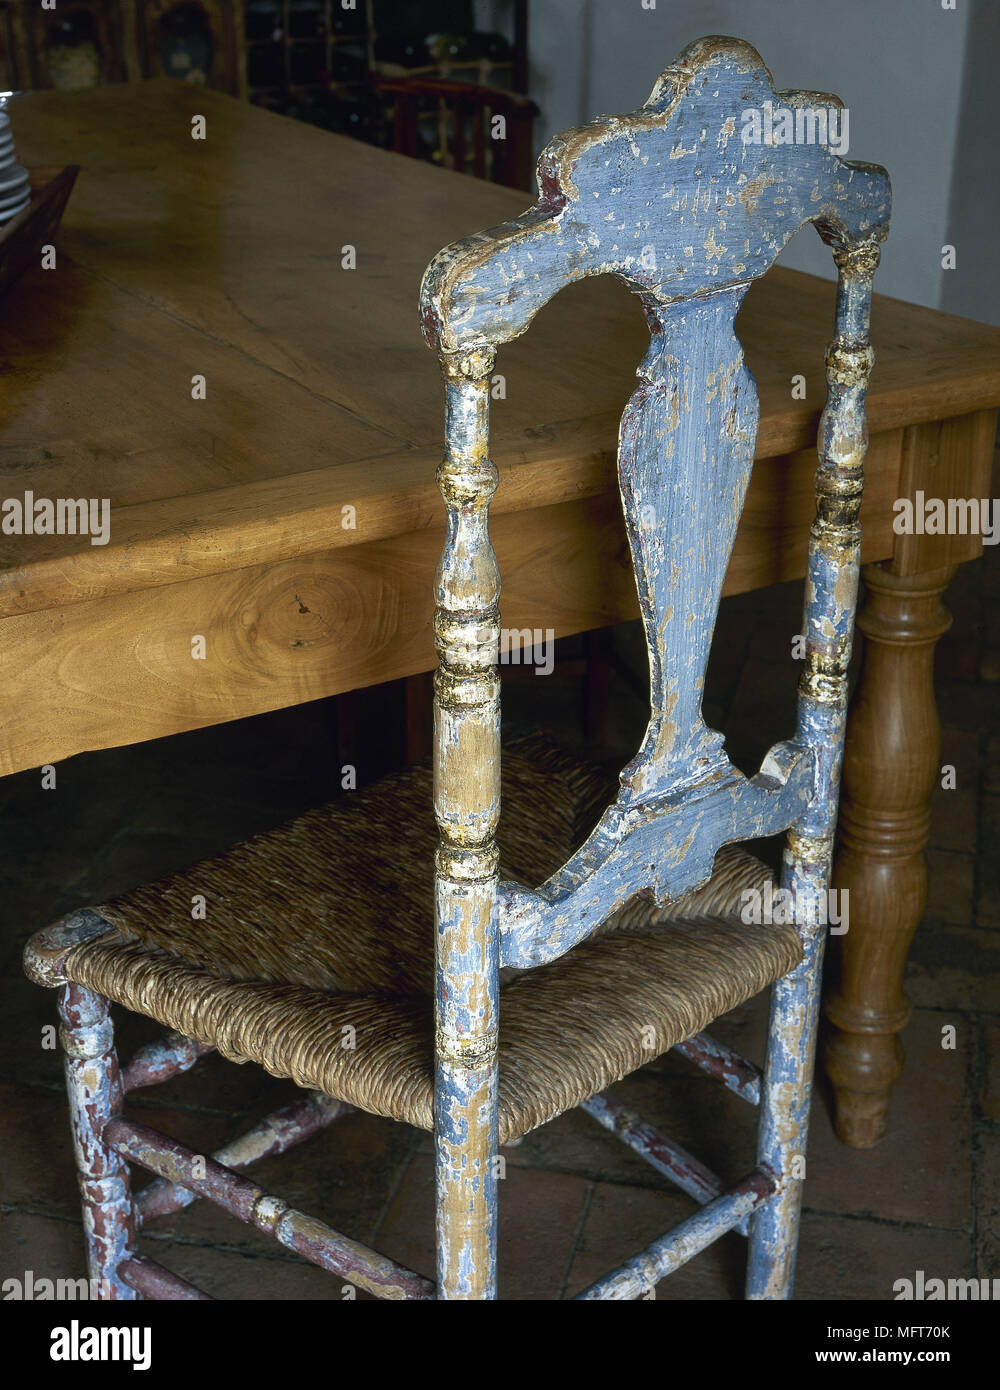 Tavola in legno rustico dipinti distressed sedia tessuto sedile rush dettaglio interni mobili rustici Foto Stock